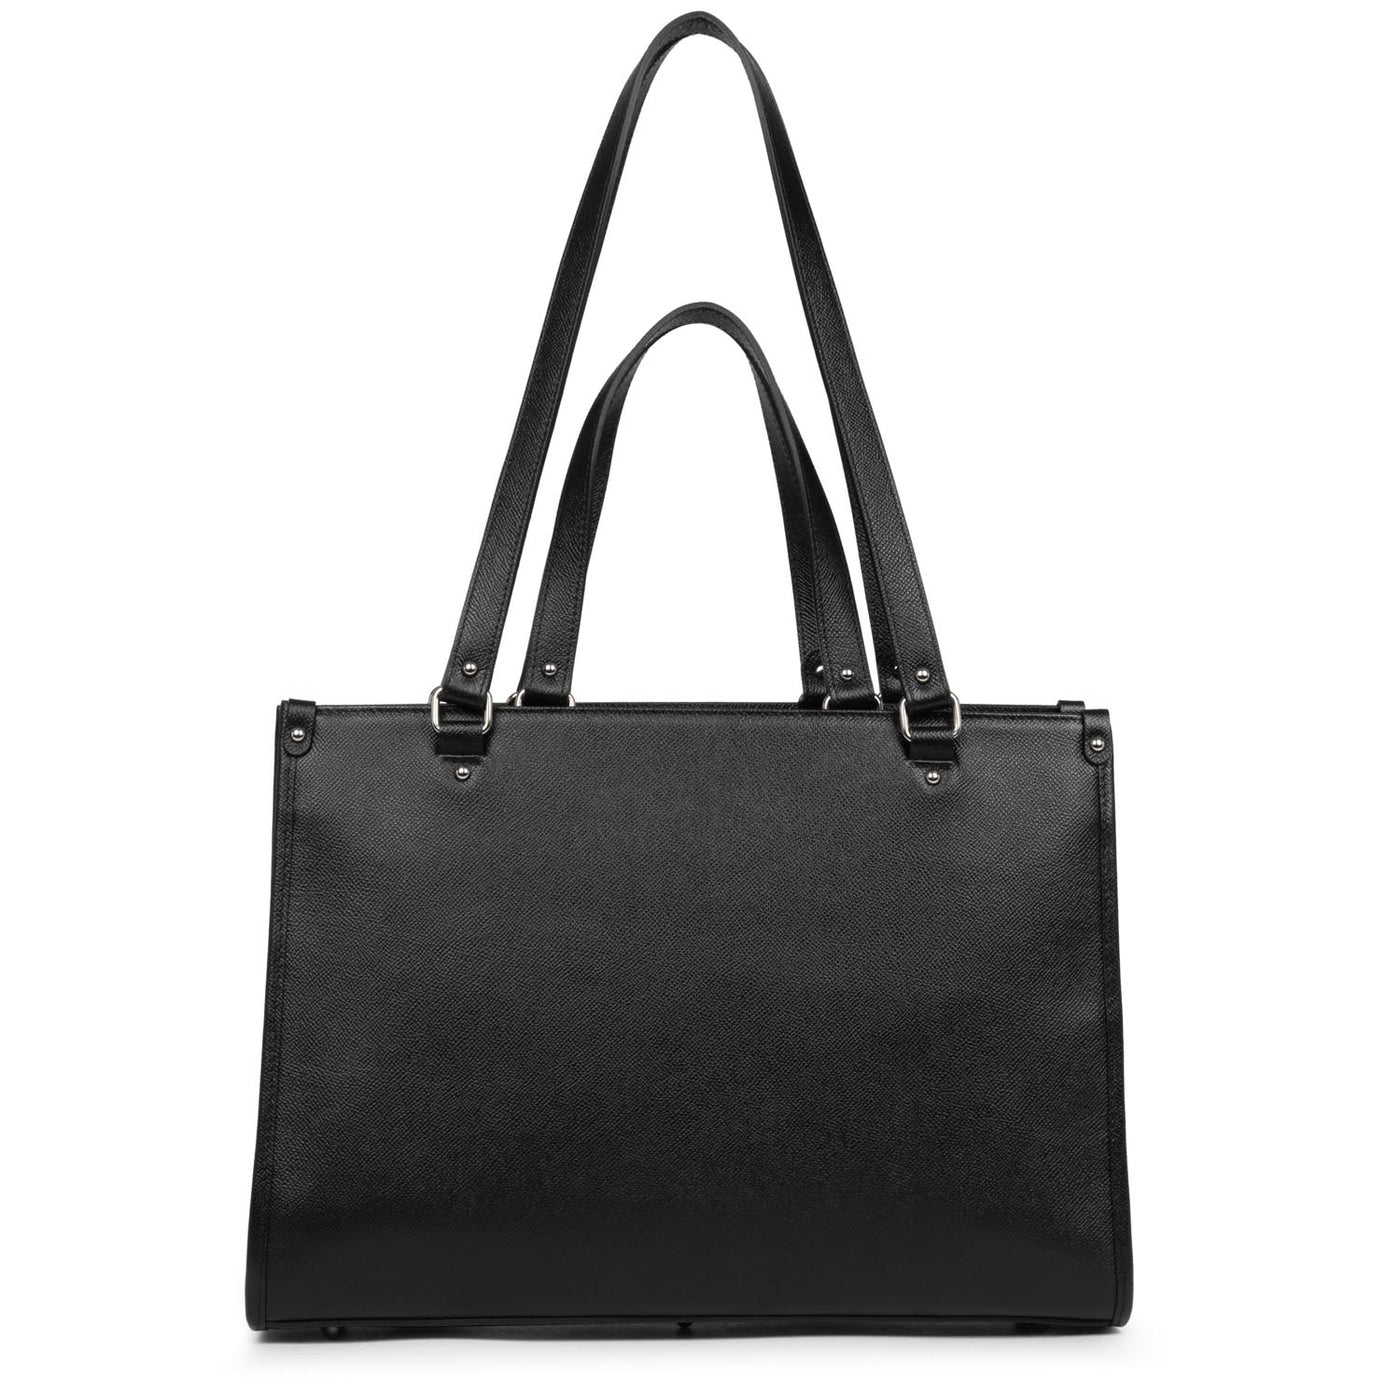 tote bag - delphino it #couleur_noir